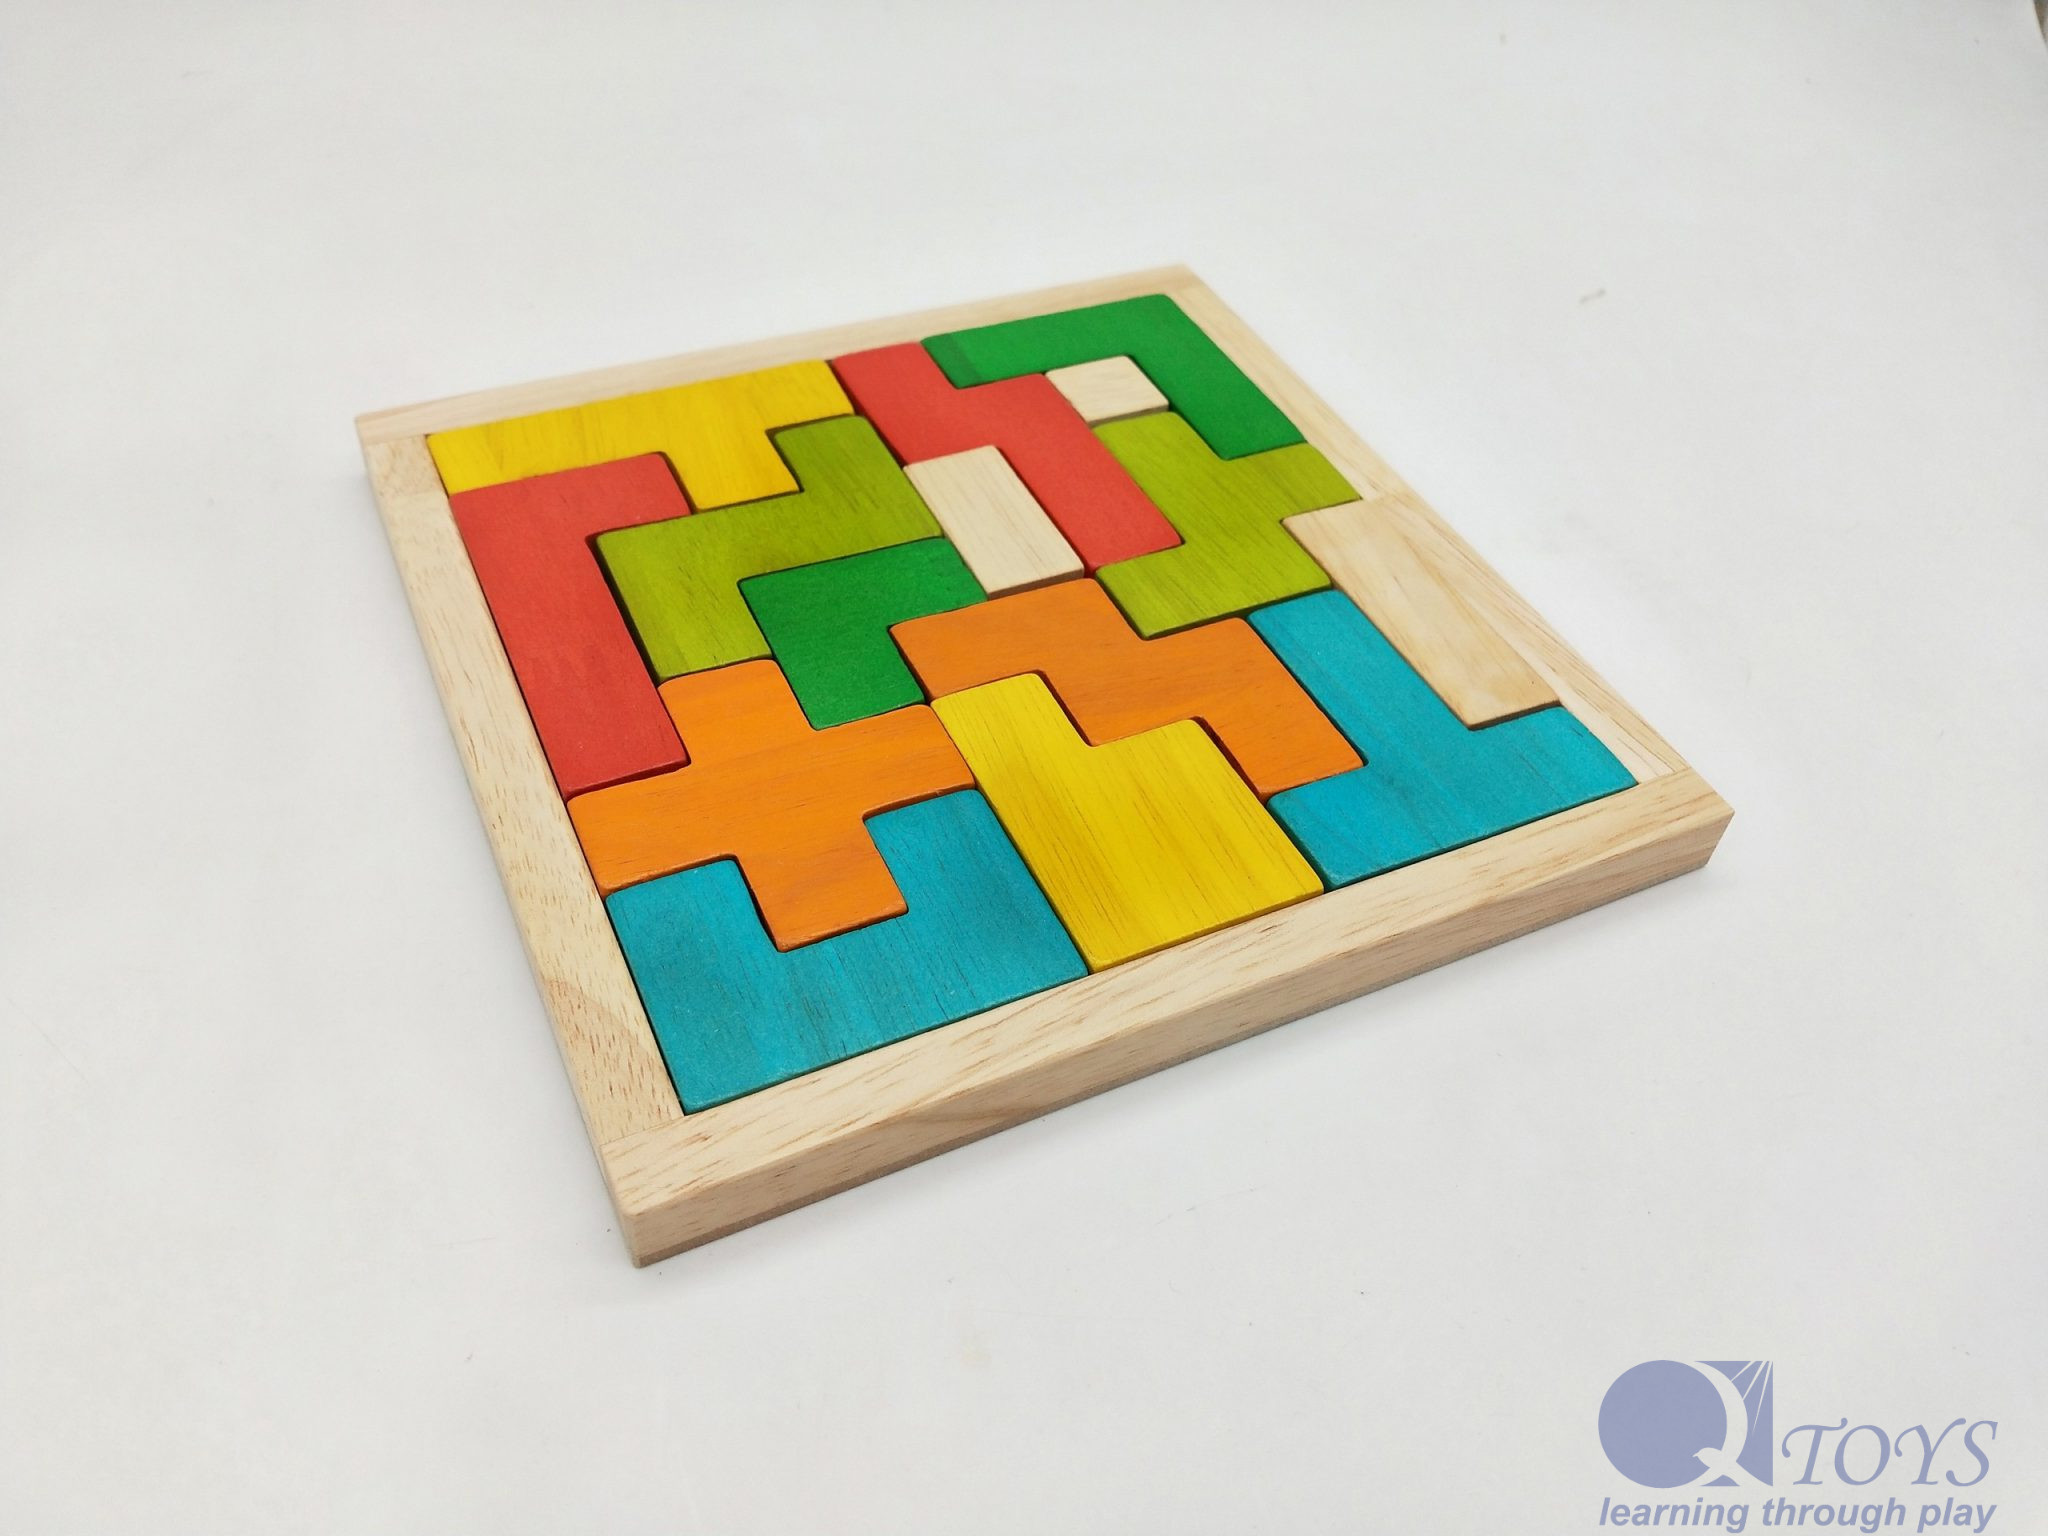 tetris block puzzle classic